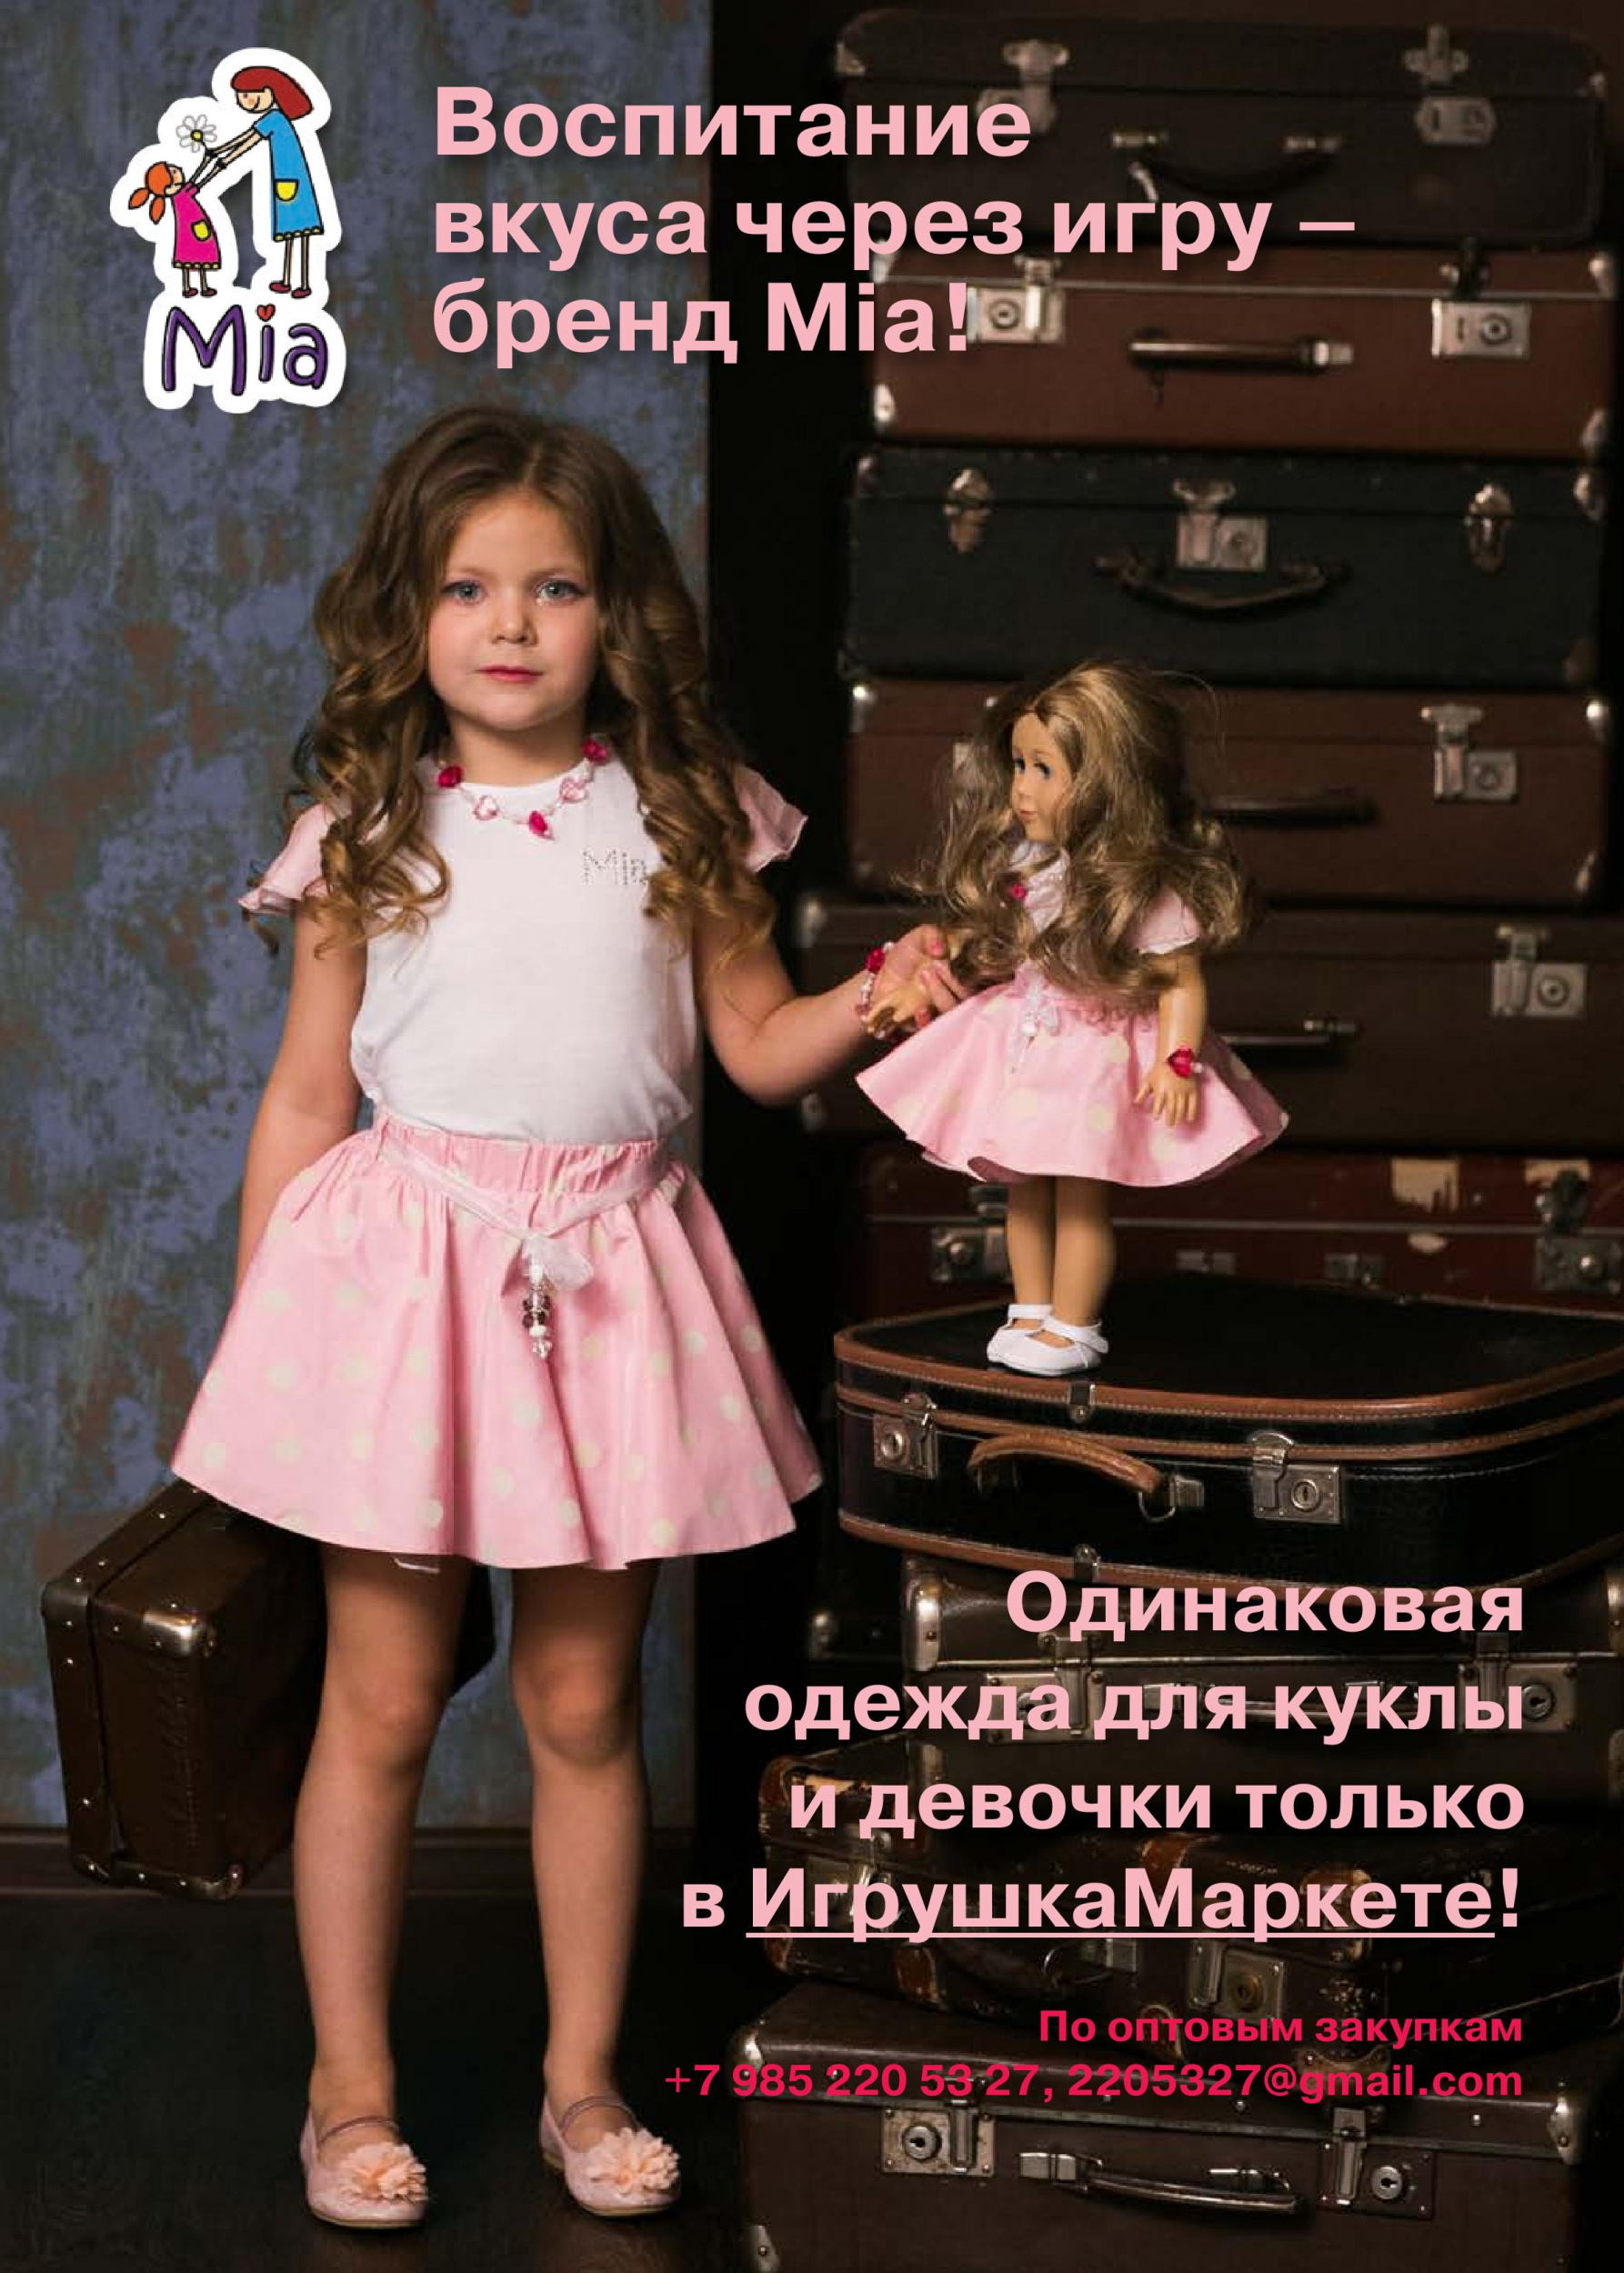 Одинаковая одежда для куклы и девочки